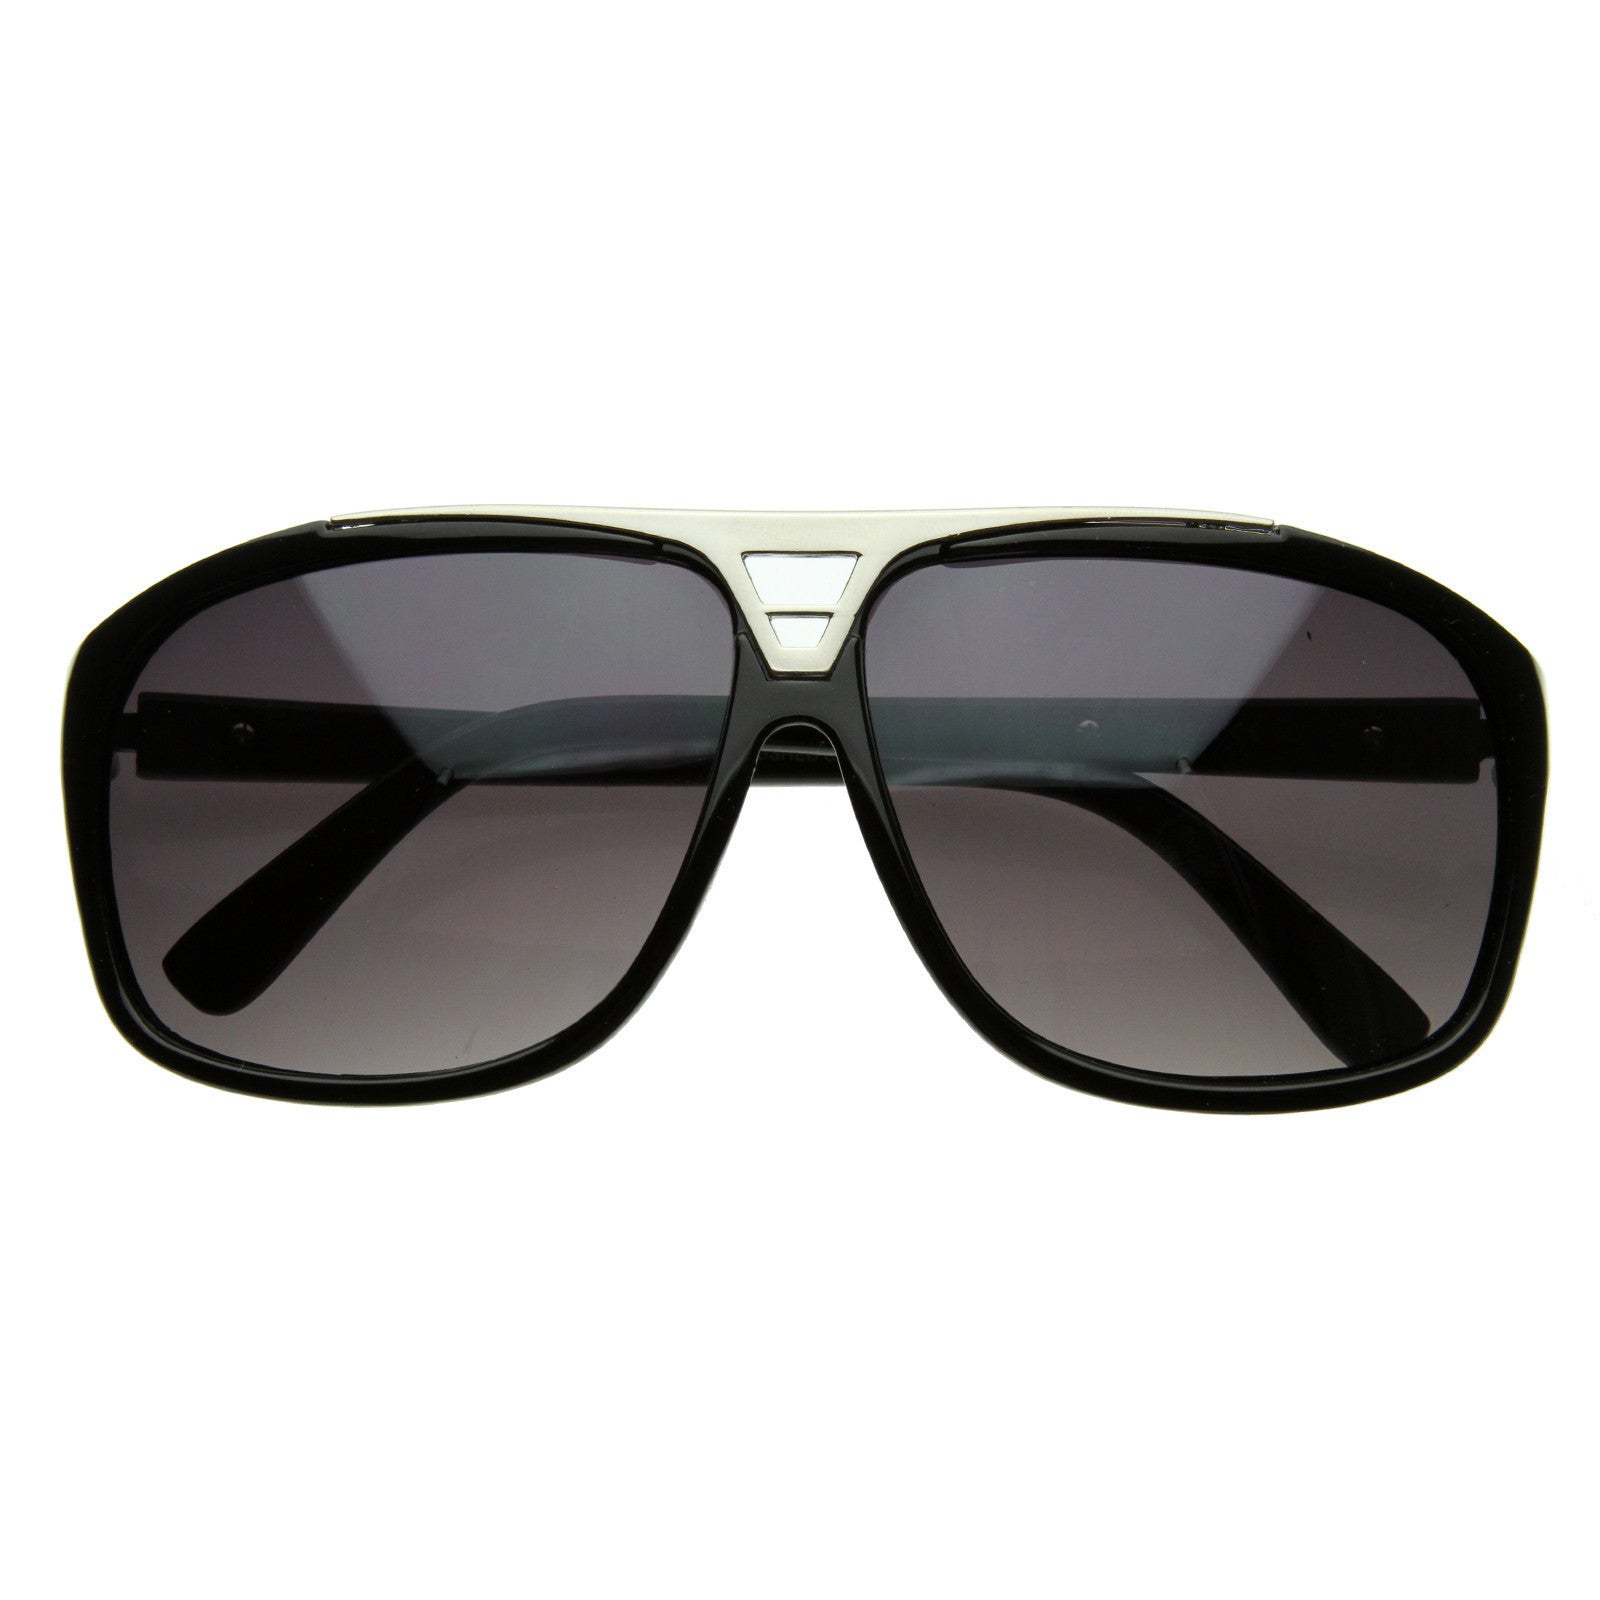 LV Square Sun Glasses Black Frame Two Tone Black Lens - Z0350 W